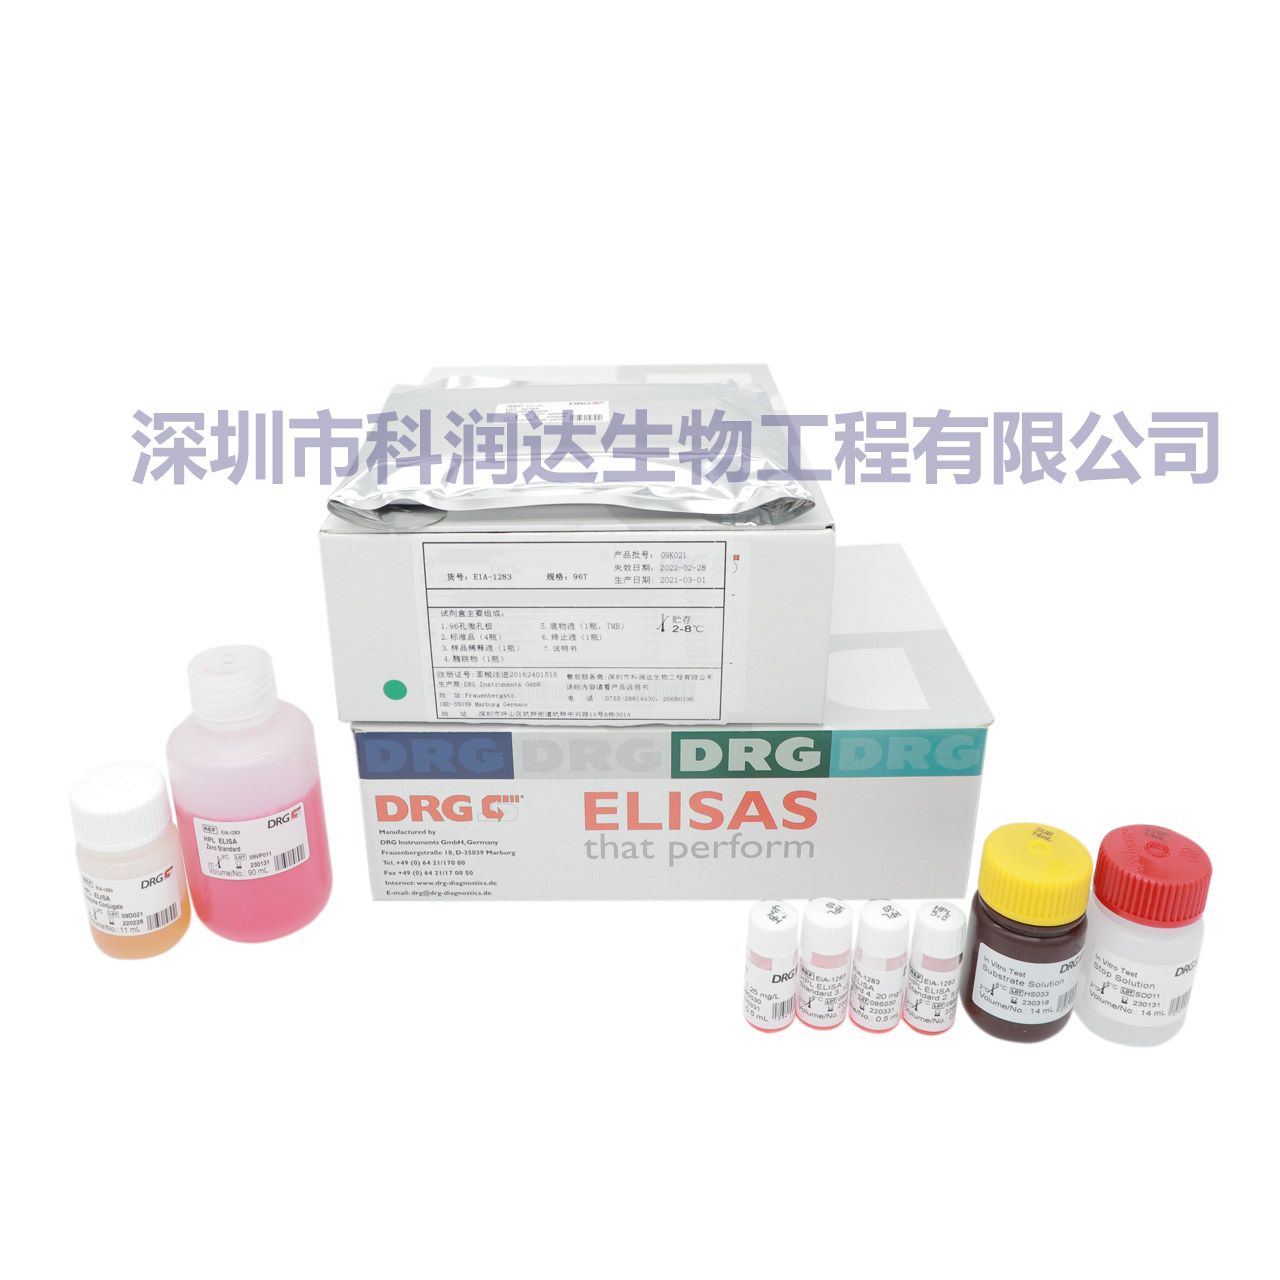 17-α羟孕酮优生优育检测试剂盒